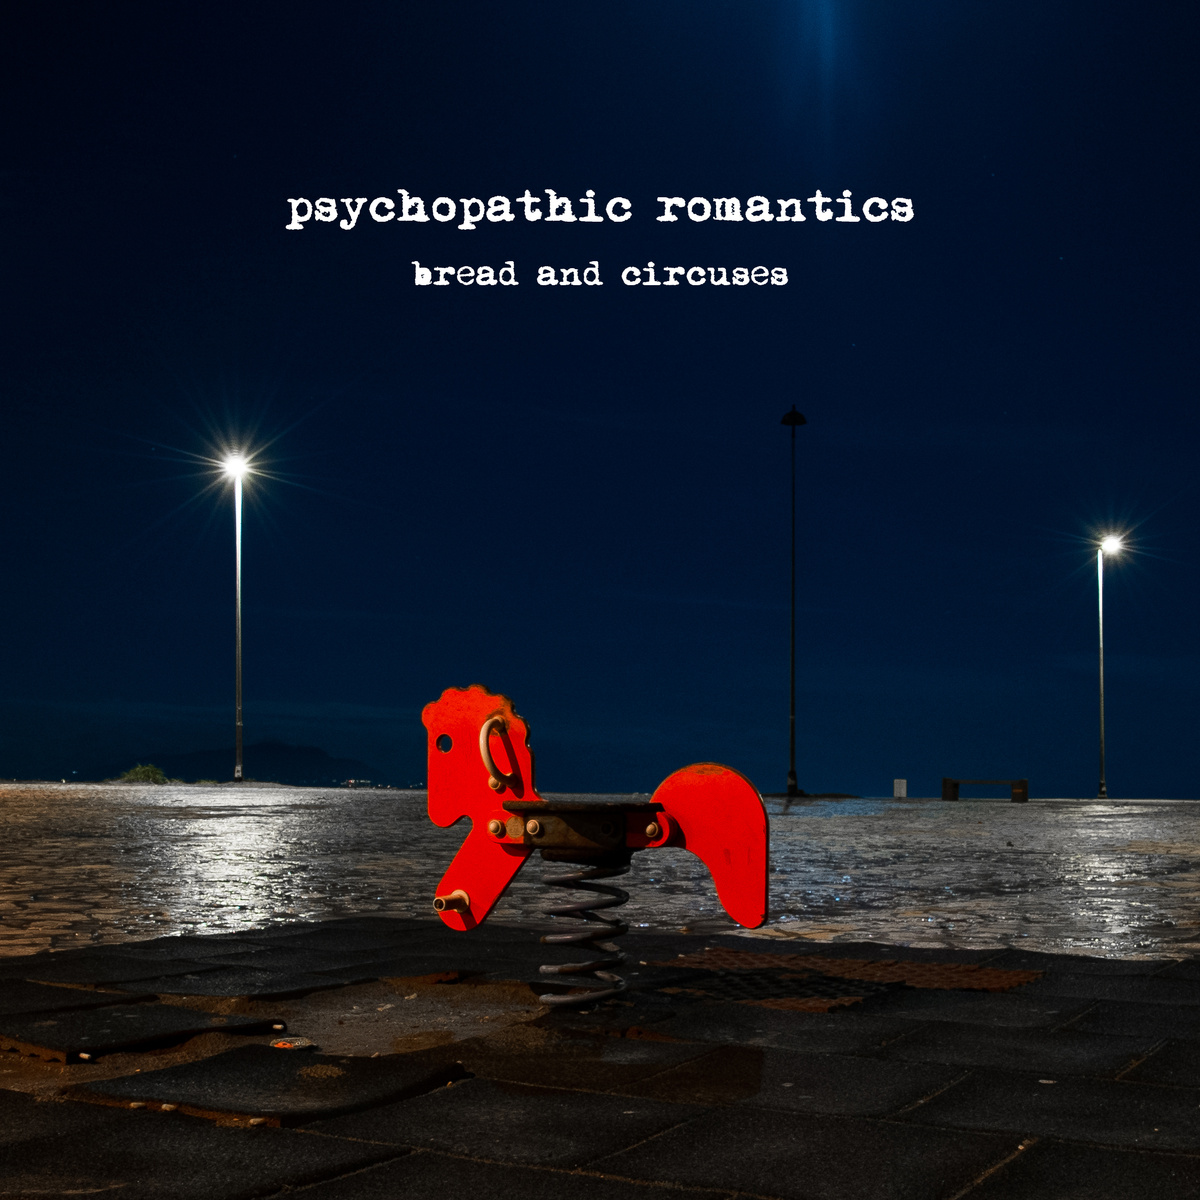  Da oggi è on line “Bread and Circuses” degli Psychopathic Romantics, la nuova release in download gratuito